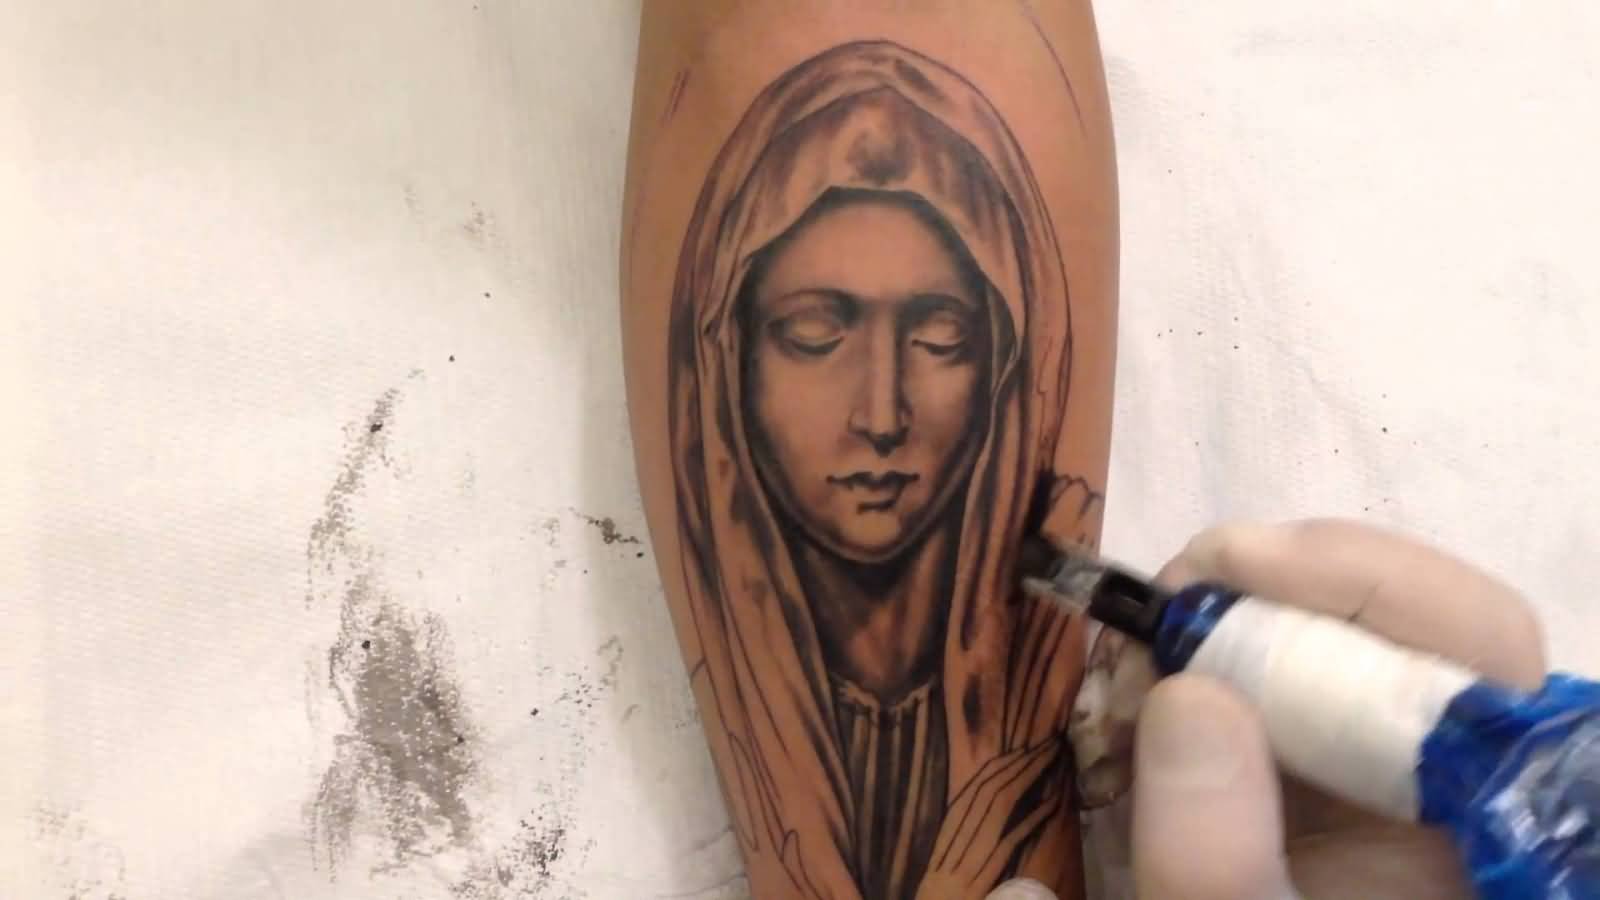 Татуировки Святая Дева Мария